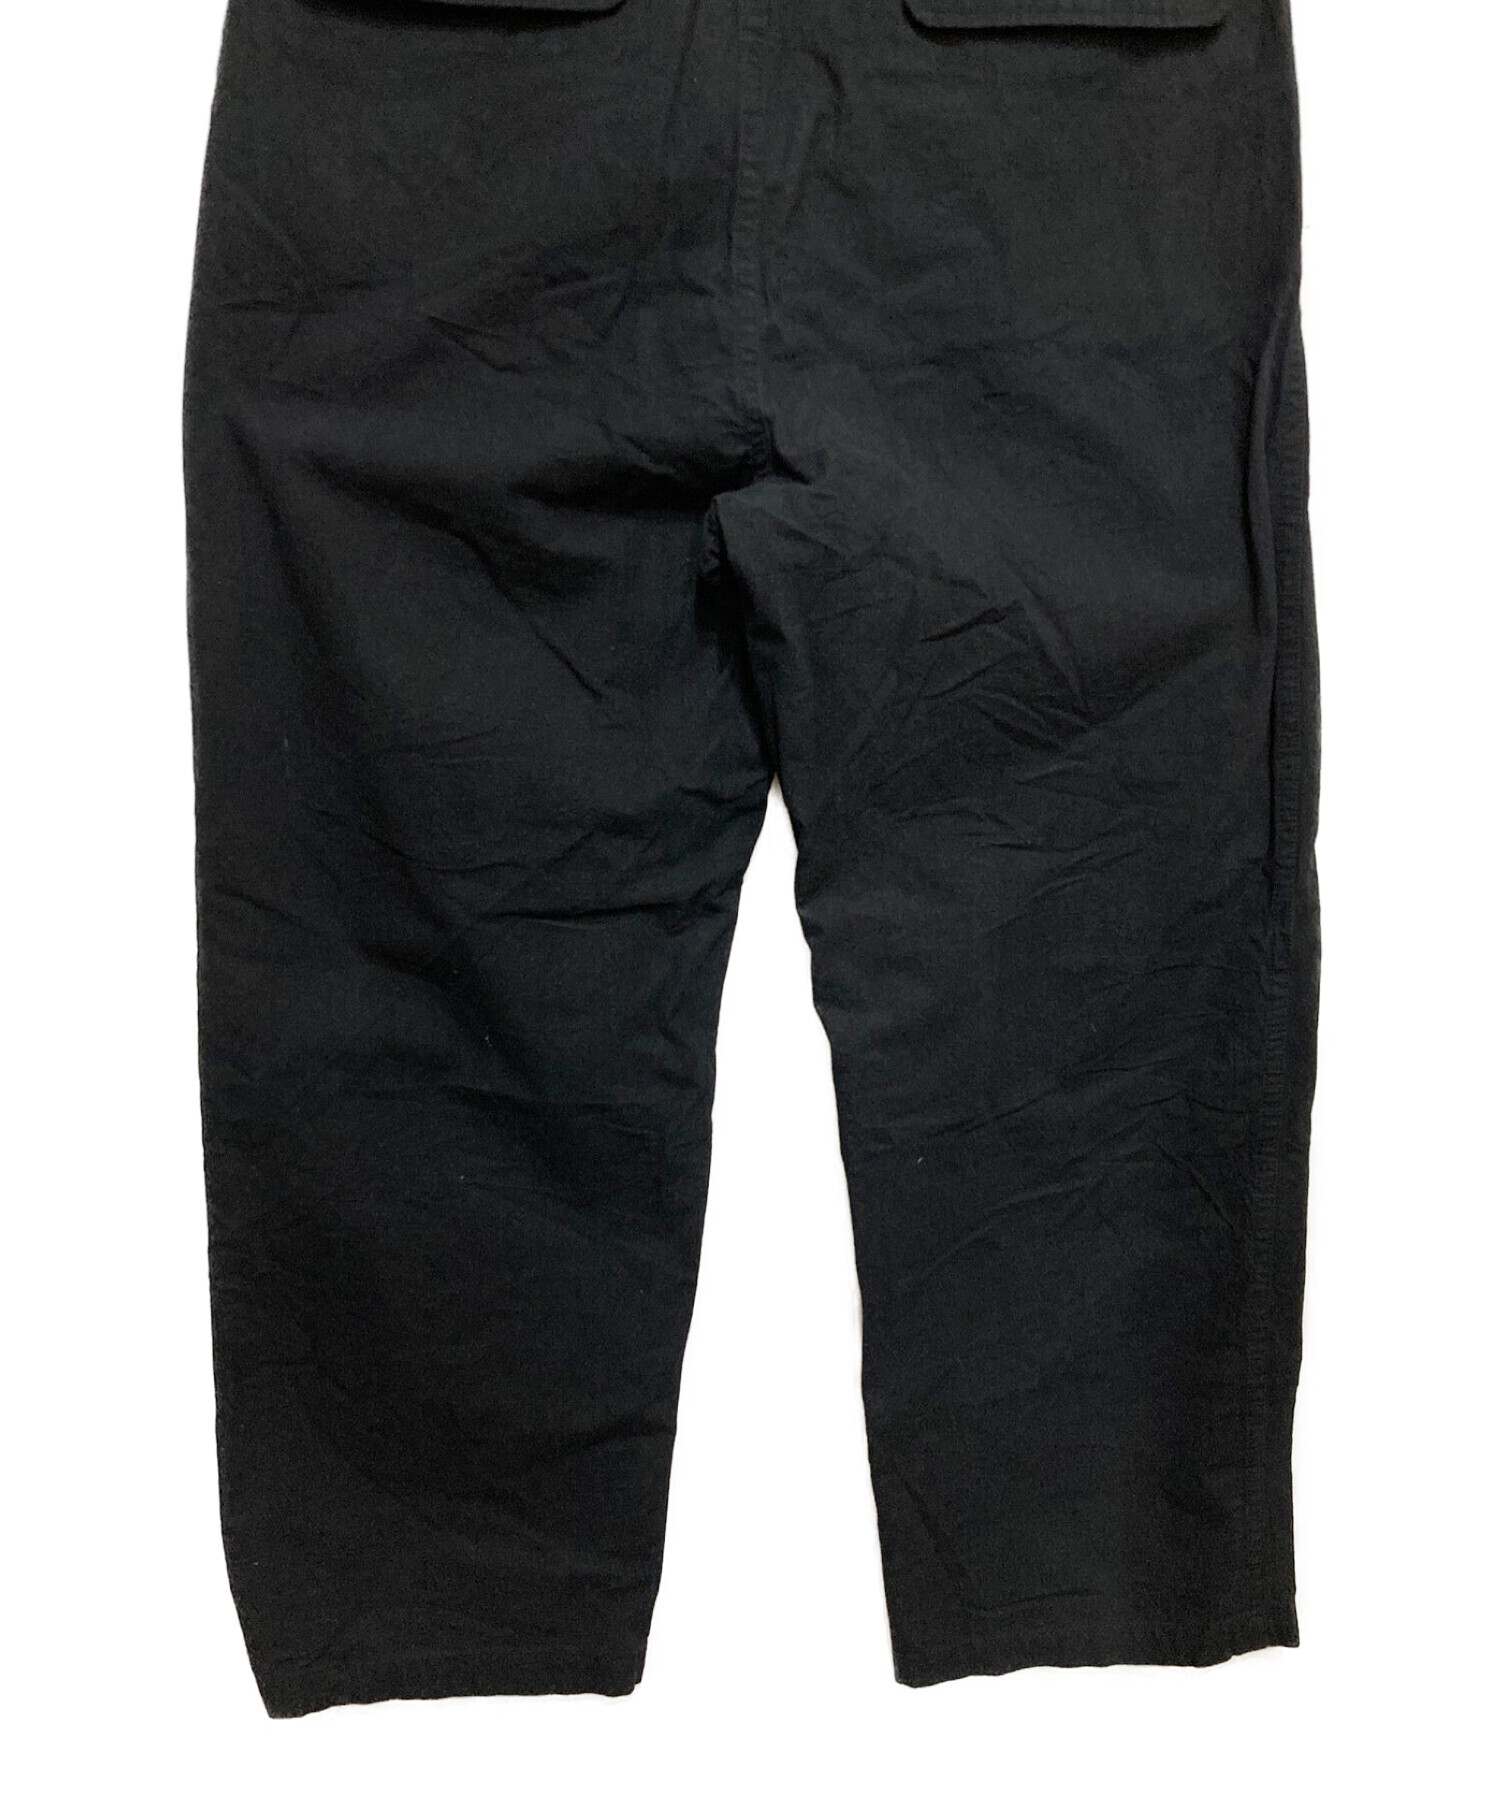 man-tle (マントル) R7 PANTS ブラック サイズ:S